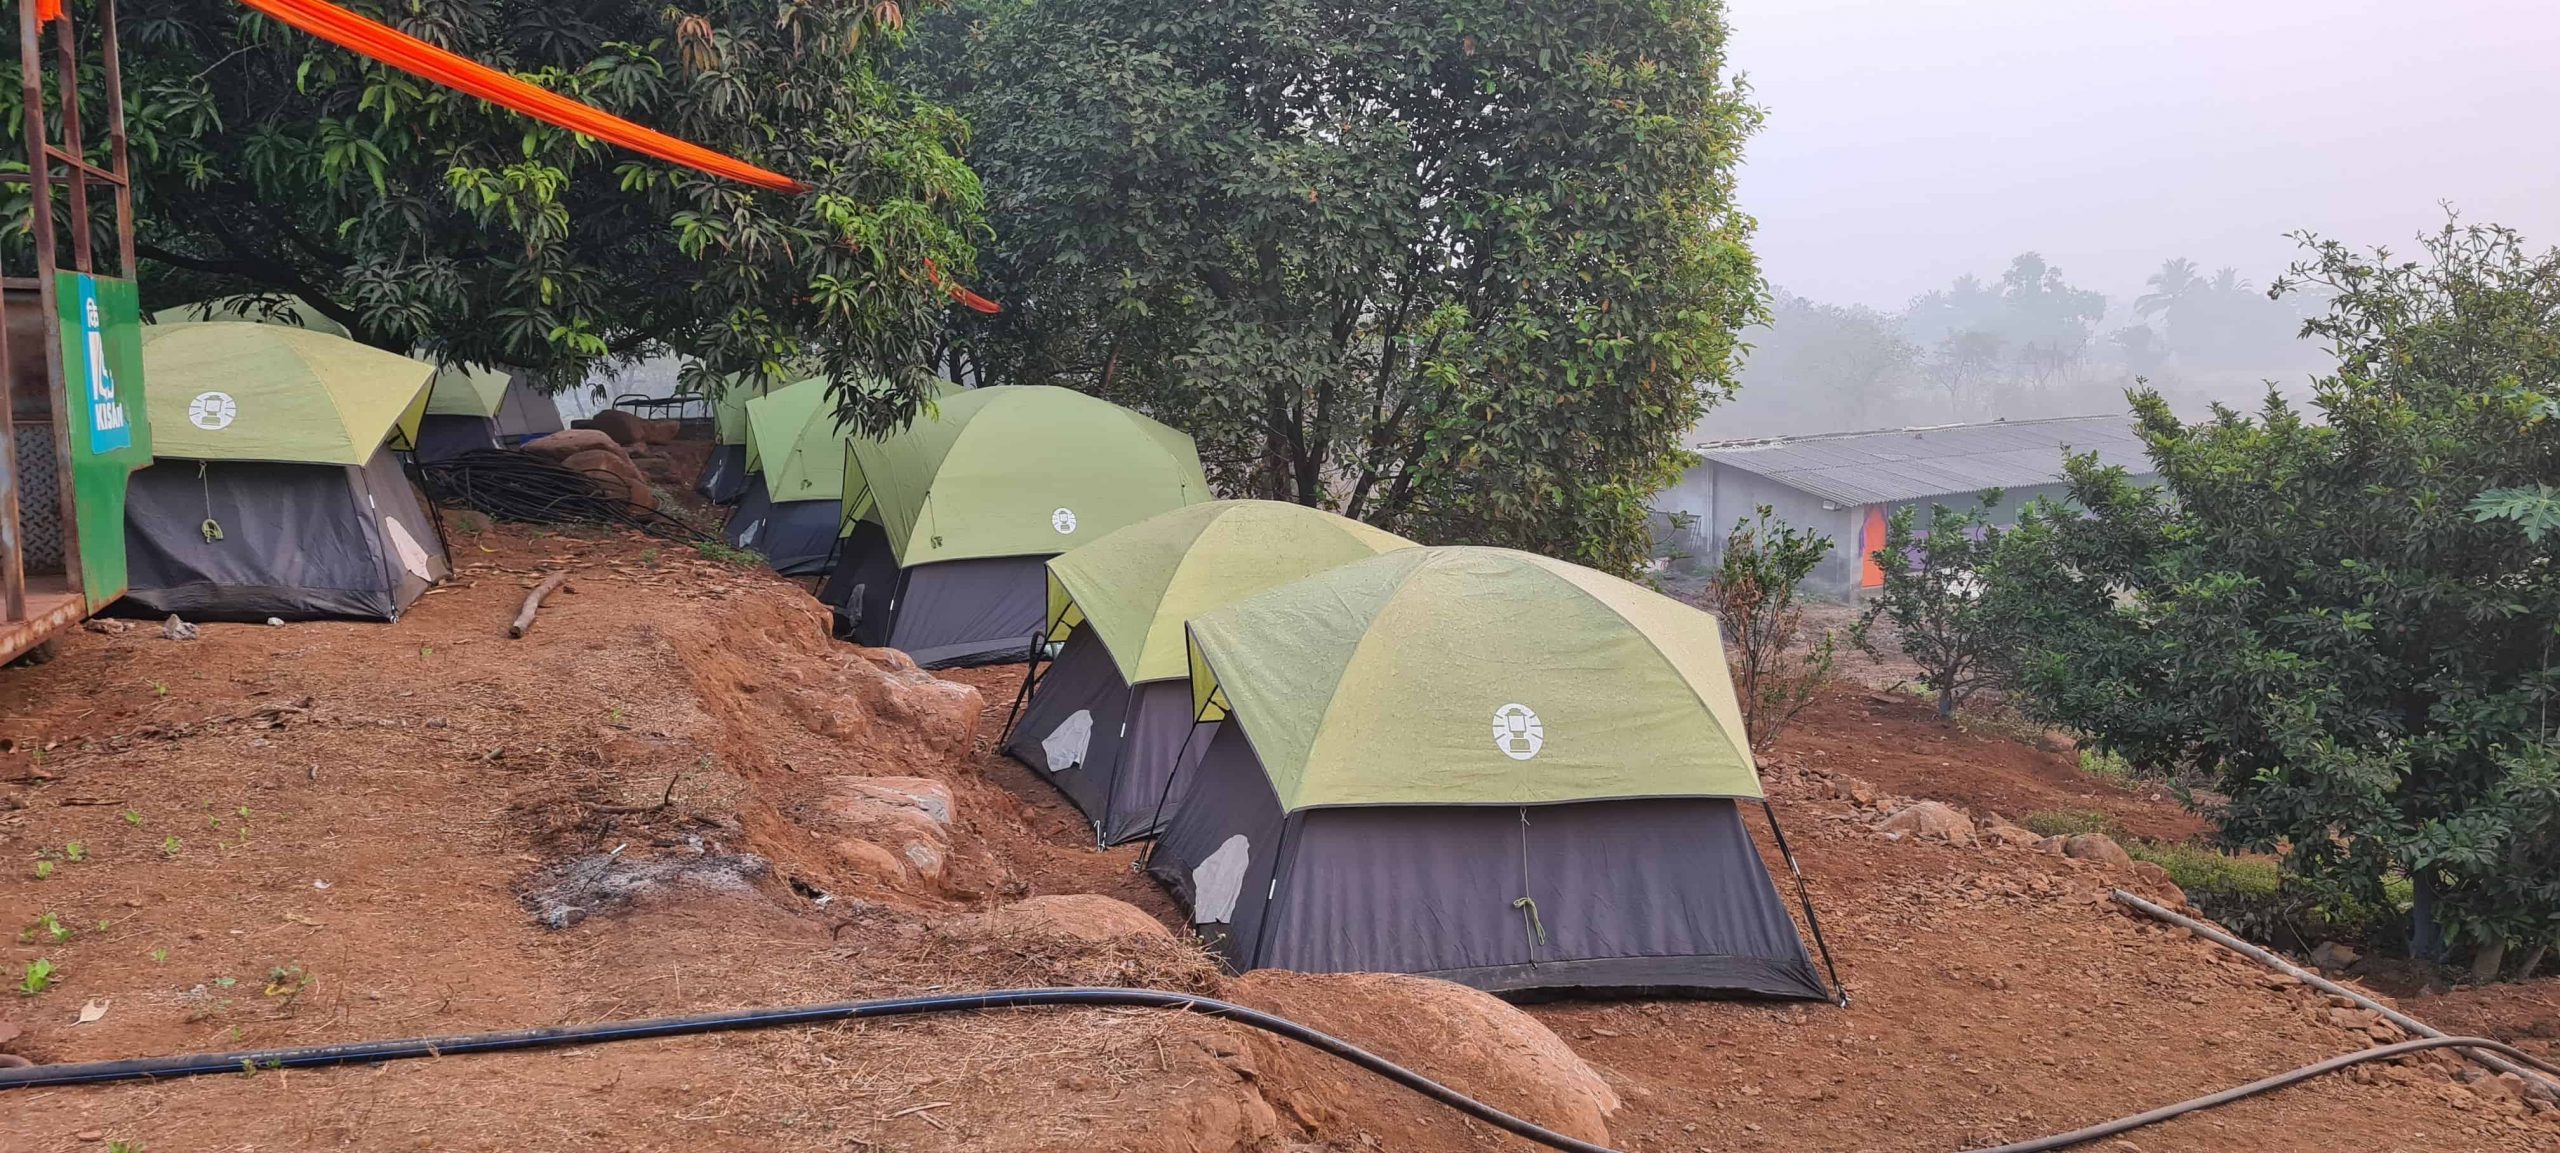 Nature Camping - Pali